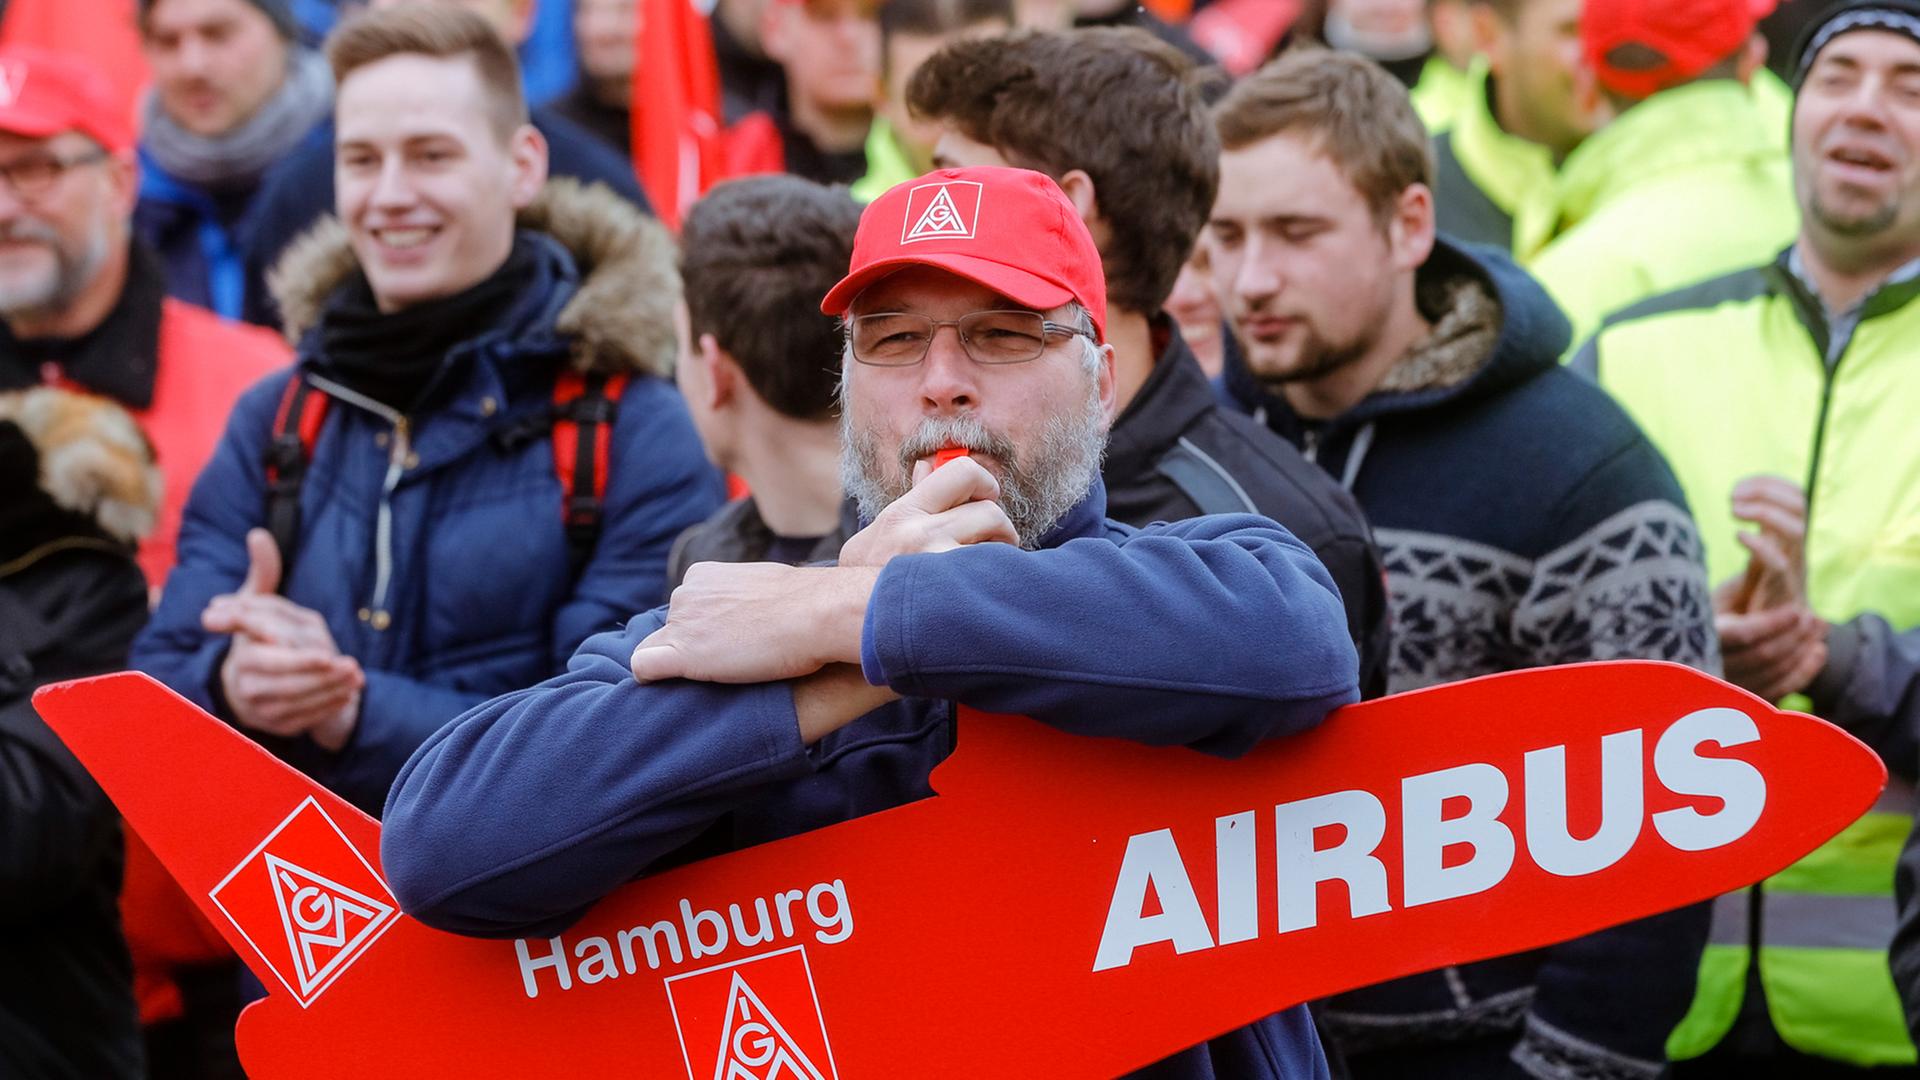 Auf einer Demonstration hält ein Mann ein rotes Schild in Flugzeugform mit der Aufschrift Airbus.